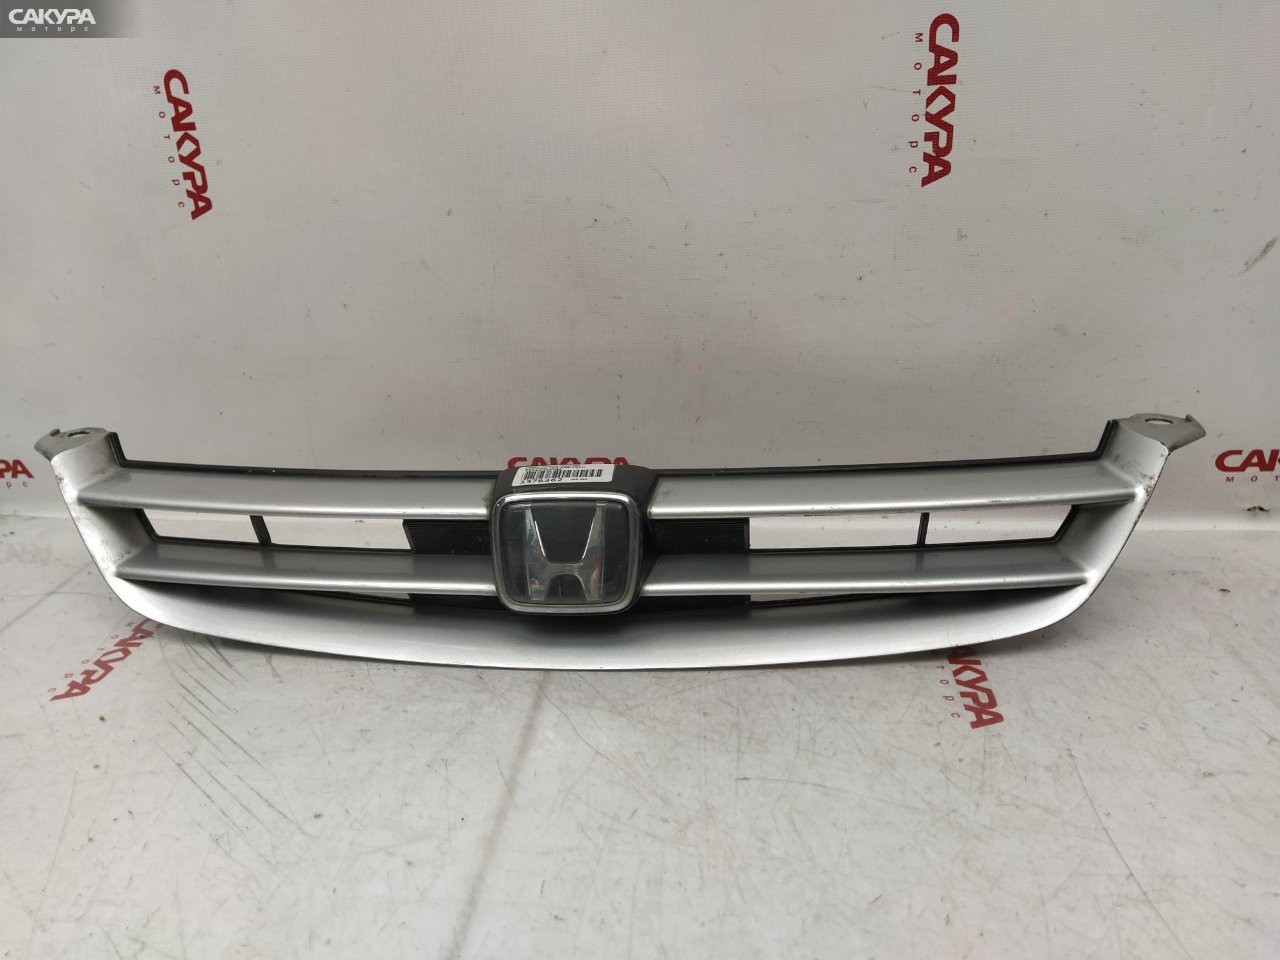 Решетка радиатора Honda Accord Wagon CF6 F23A: купить в Сакура Красноярск.